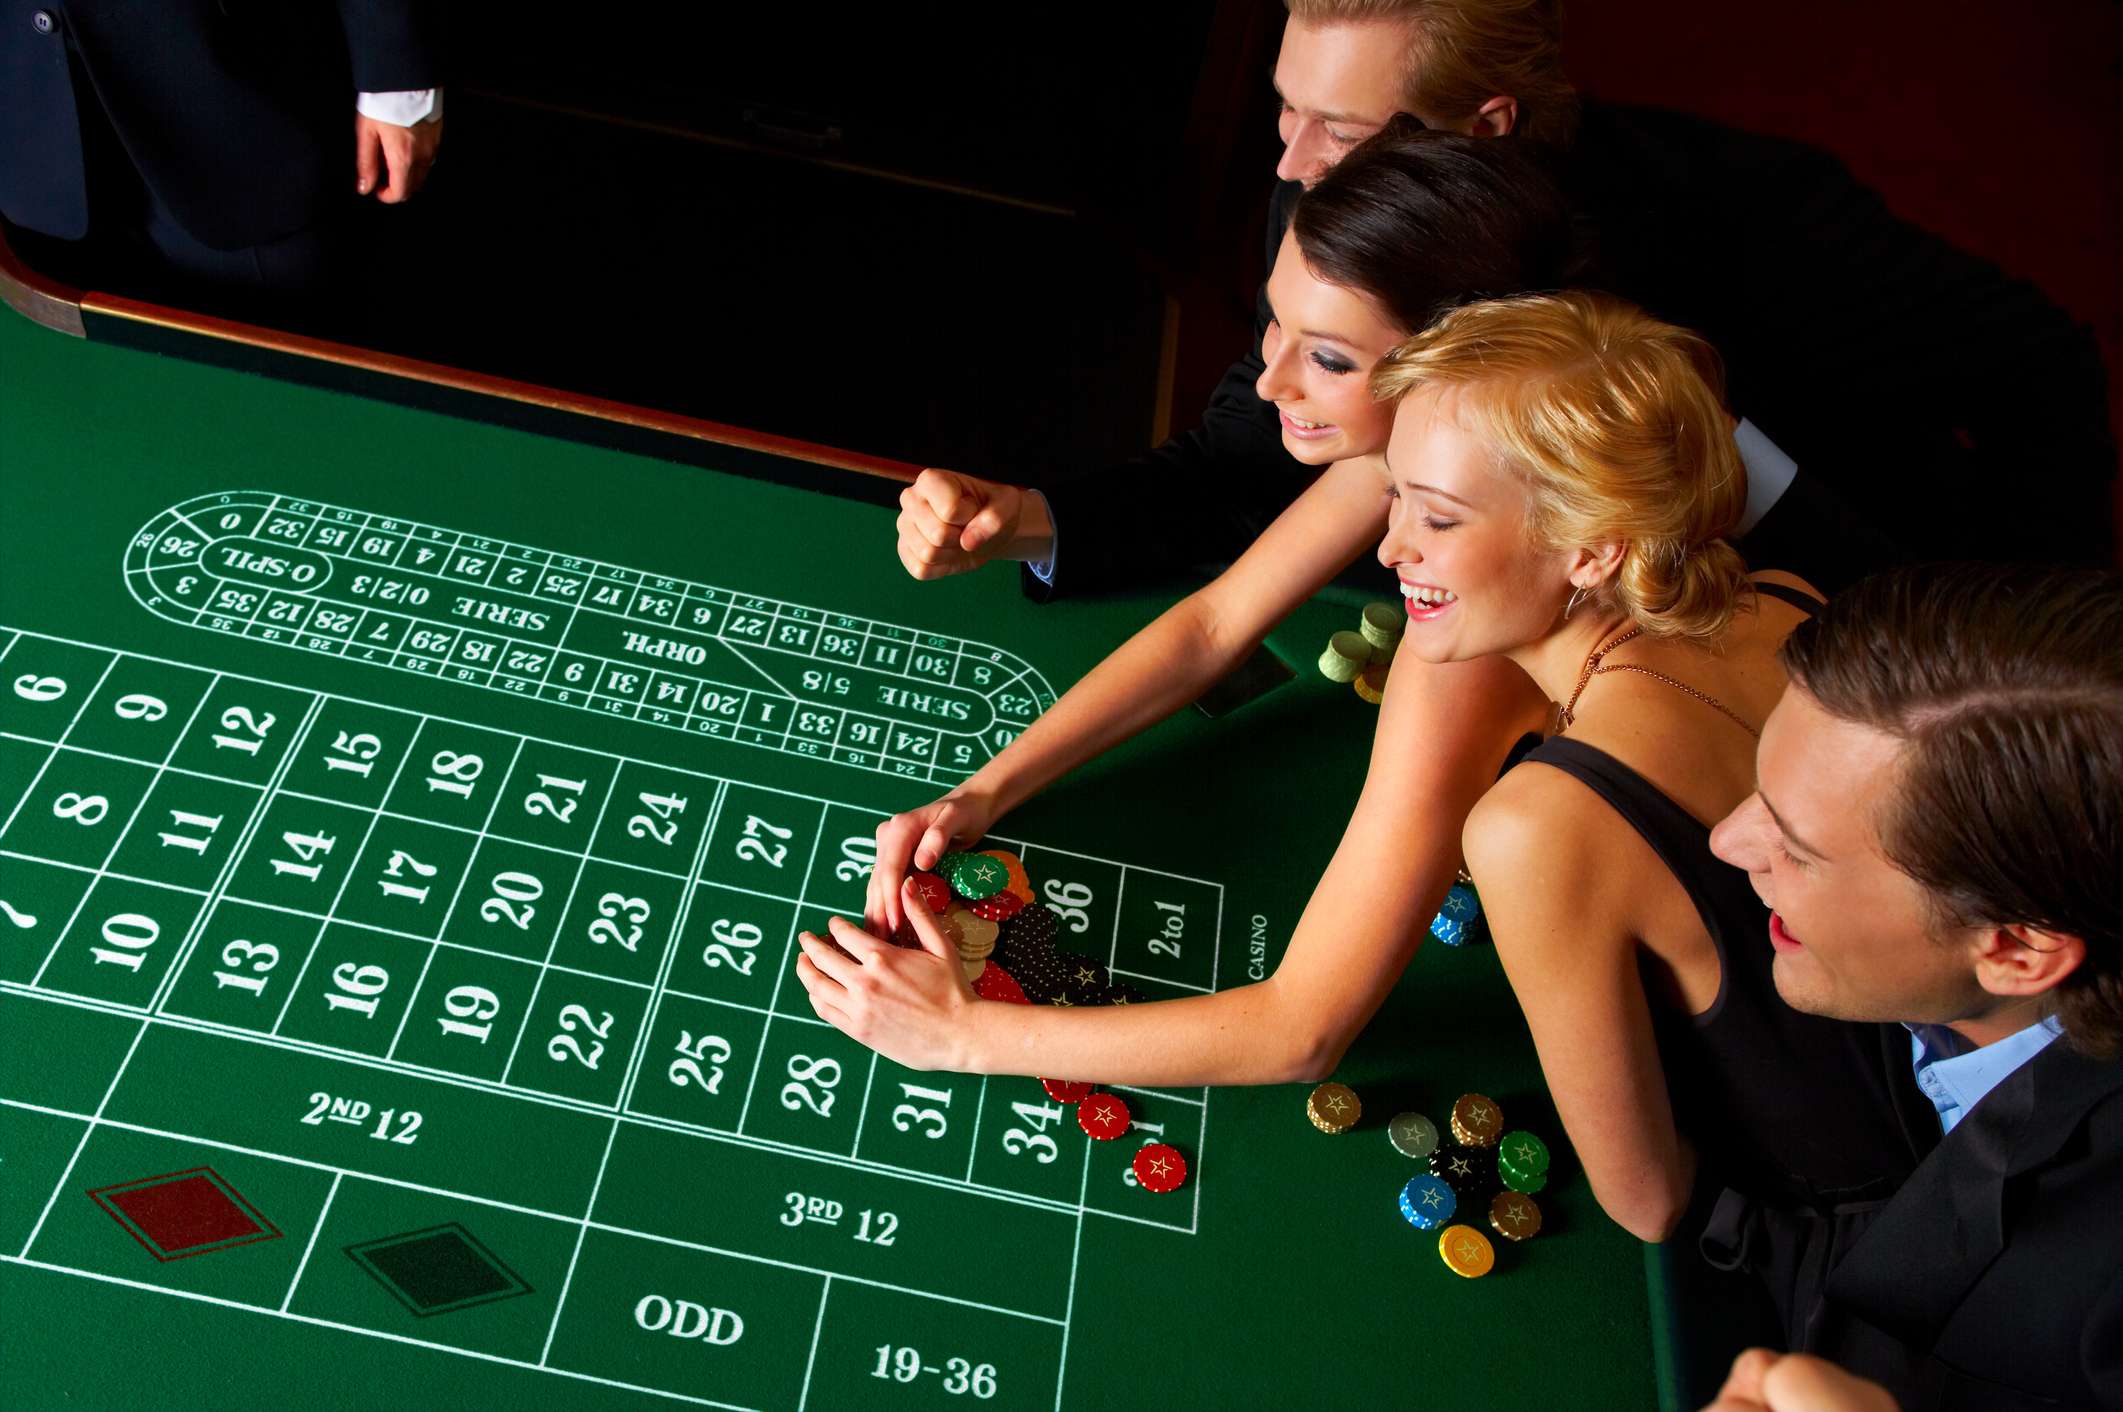 Online Casino Bet